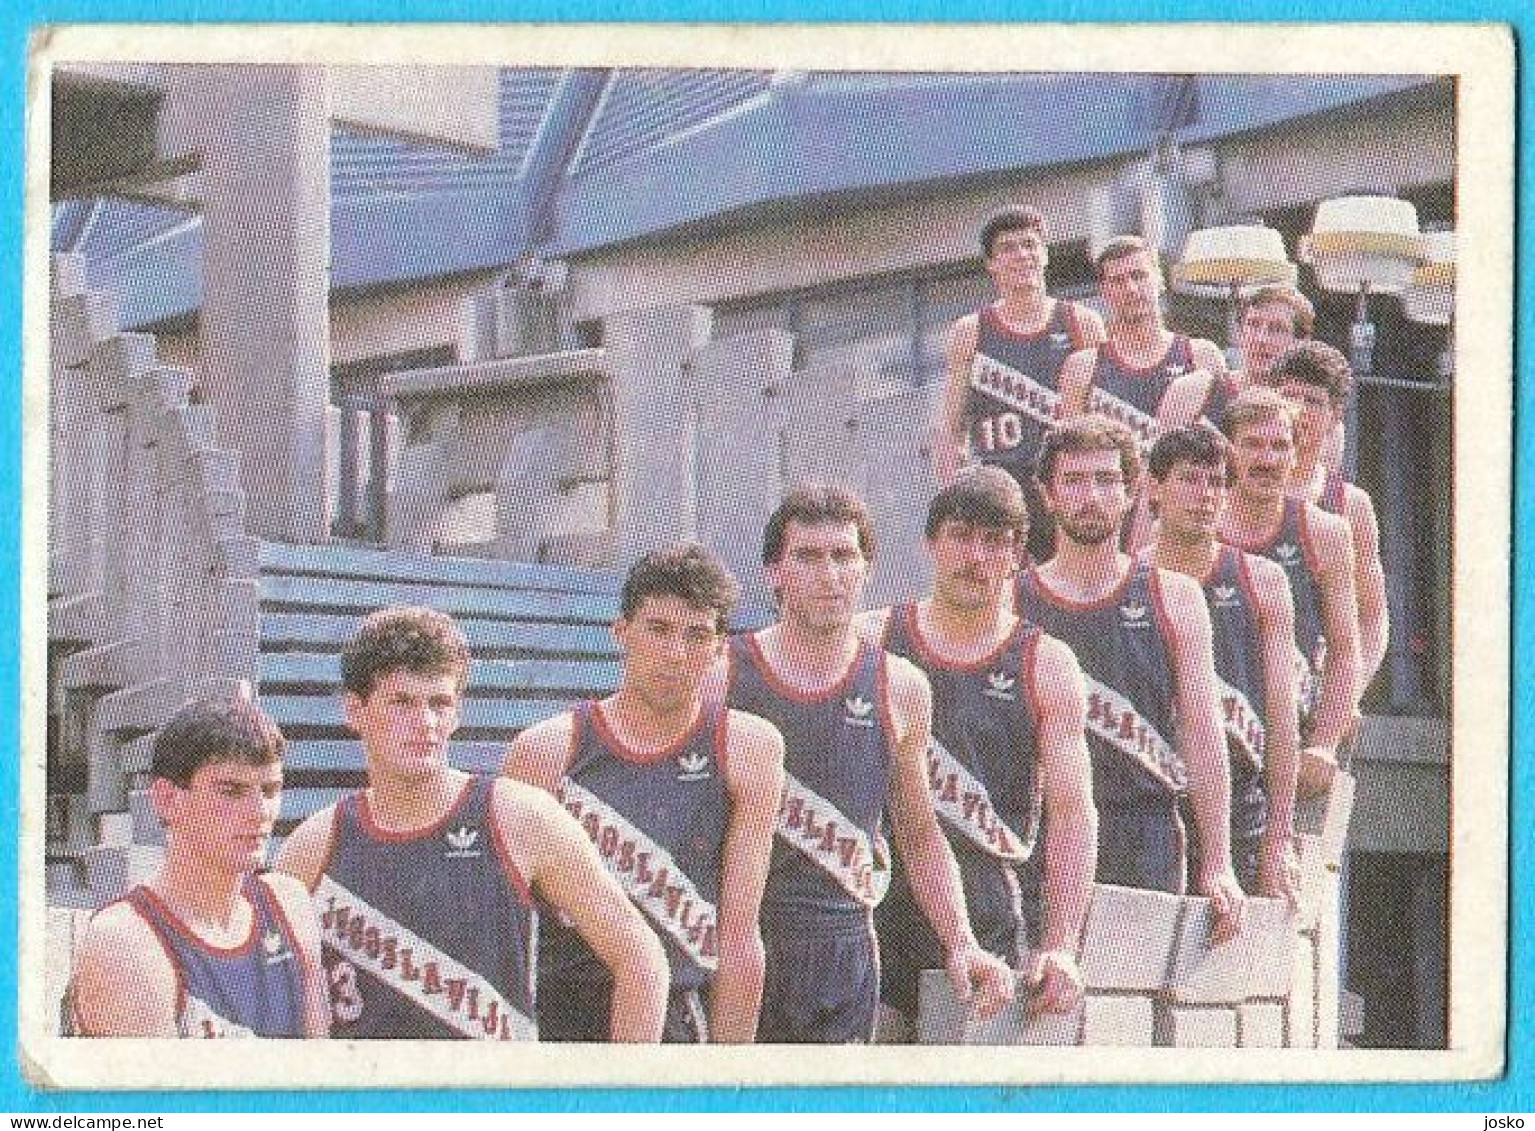 YUGOSLAV BASKETBALL TEAM - Vintage Basketball Card 1980s * Drazen Petrovic Stojko Vrankovic Drazen Dalipagic F. Arapovic - Ante-1980